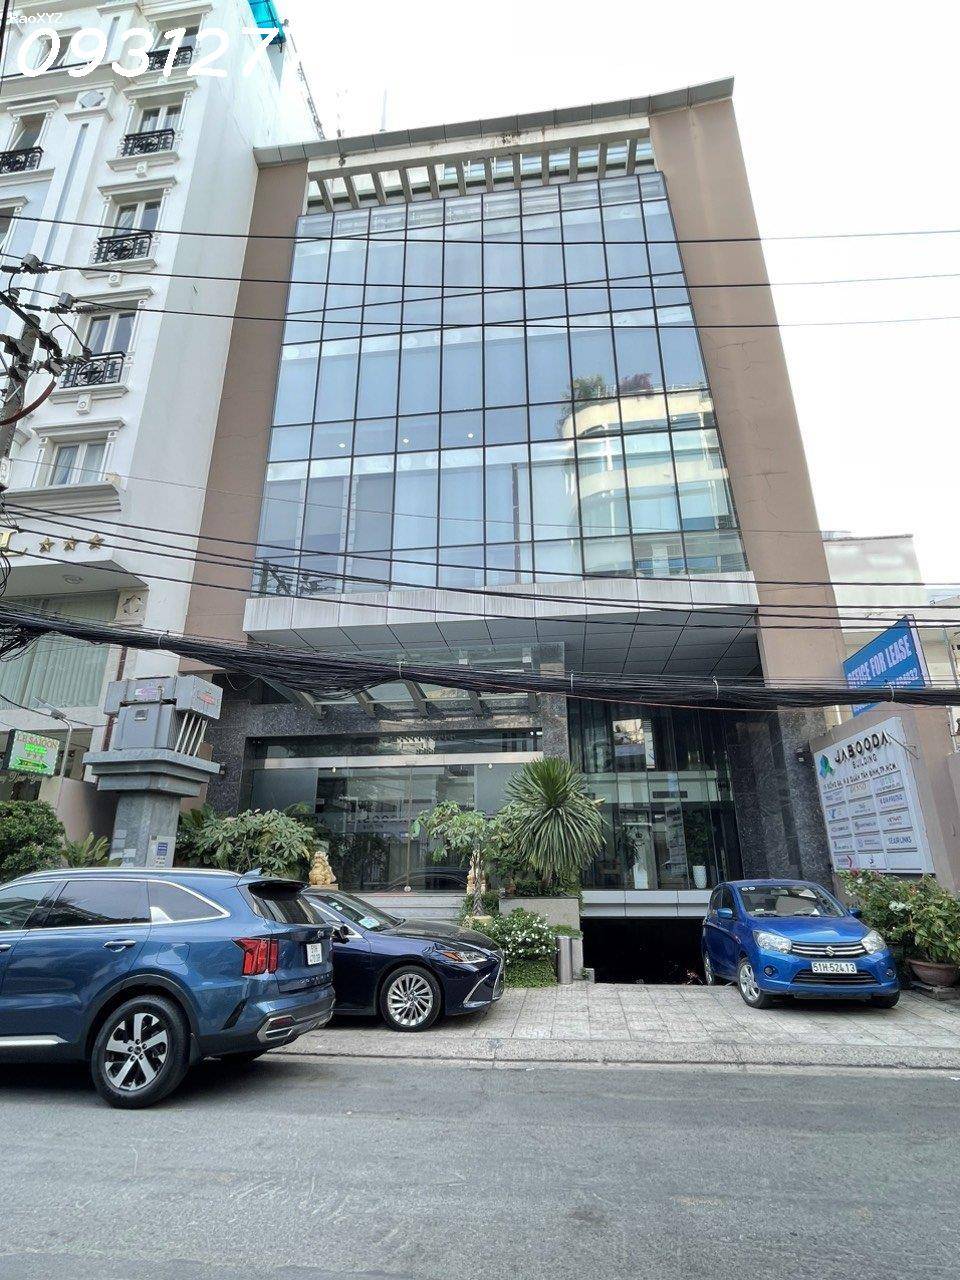 Cho thuê văn phòng toà nhà Jabooda Building MT đường Đống Đa, phường 2, Tân Bình.